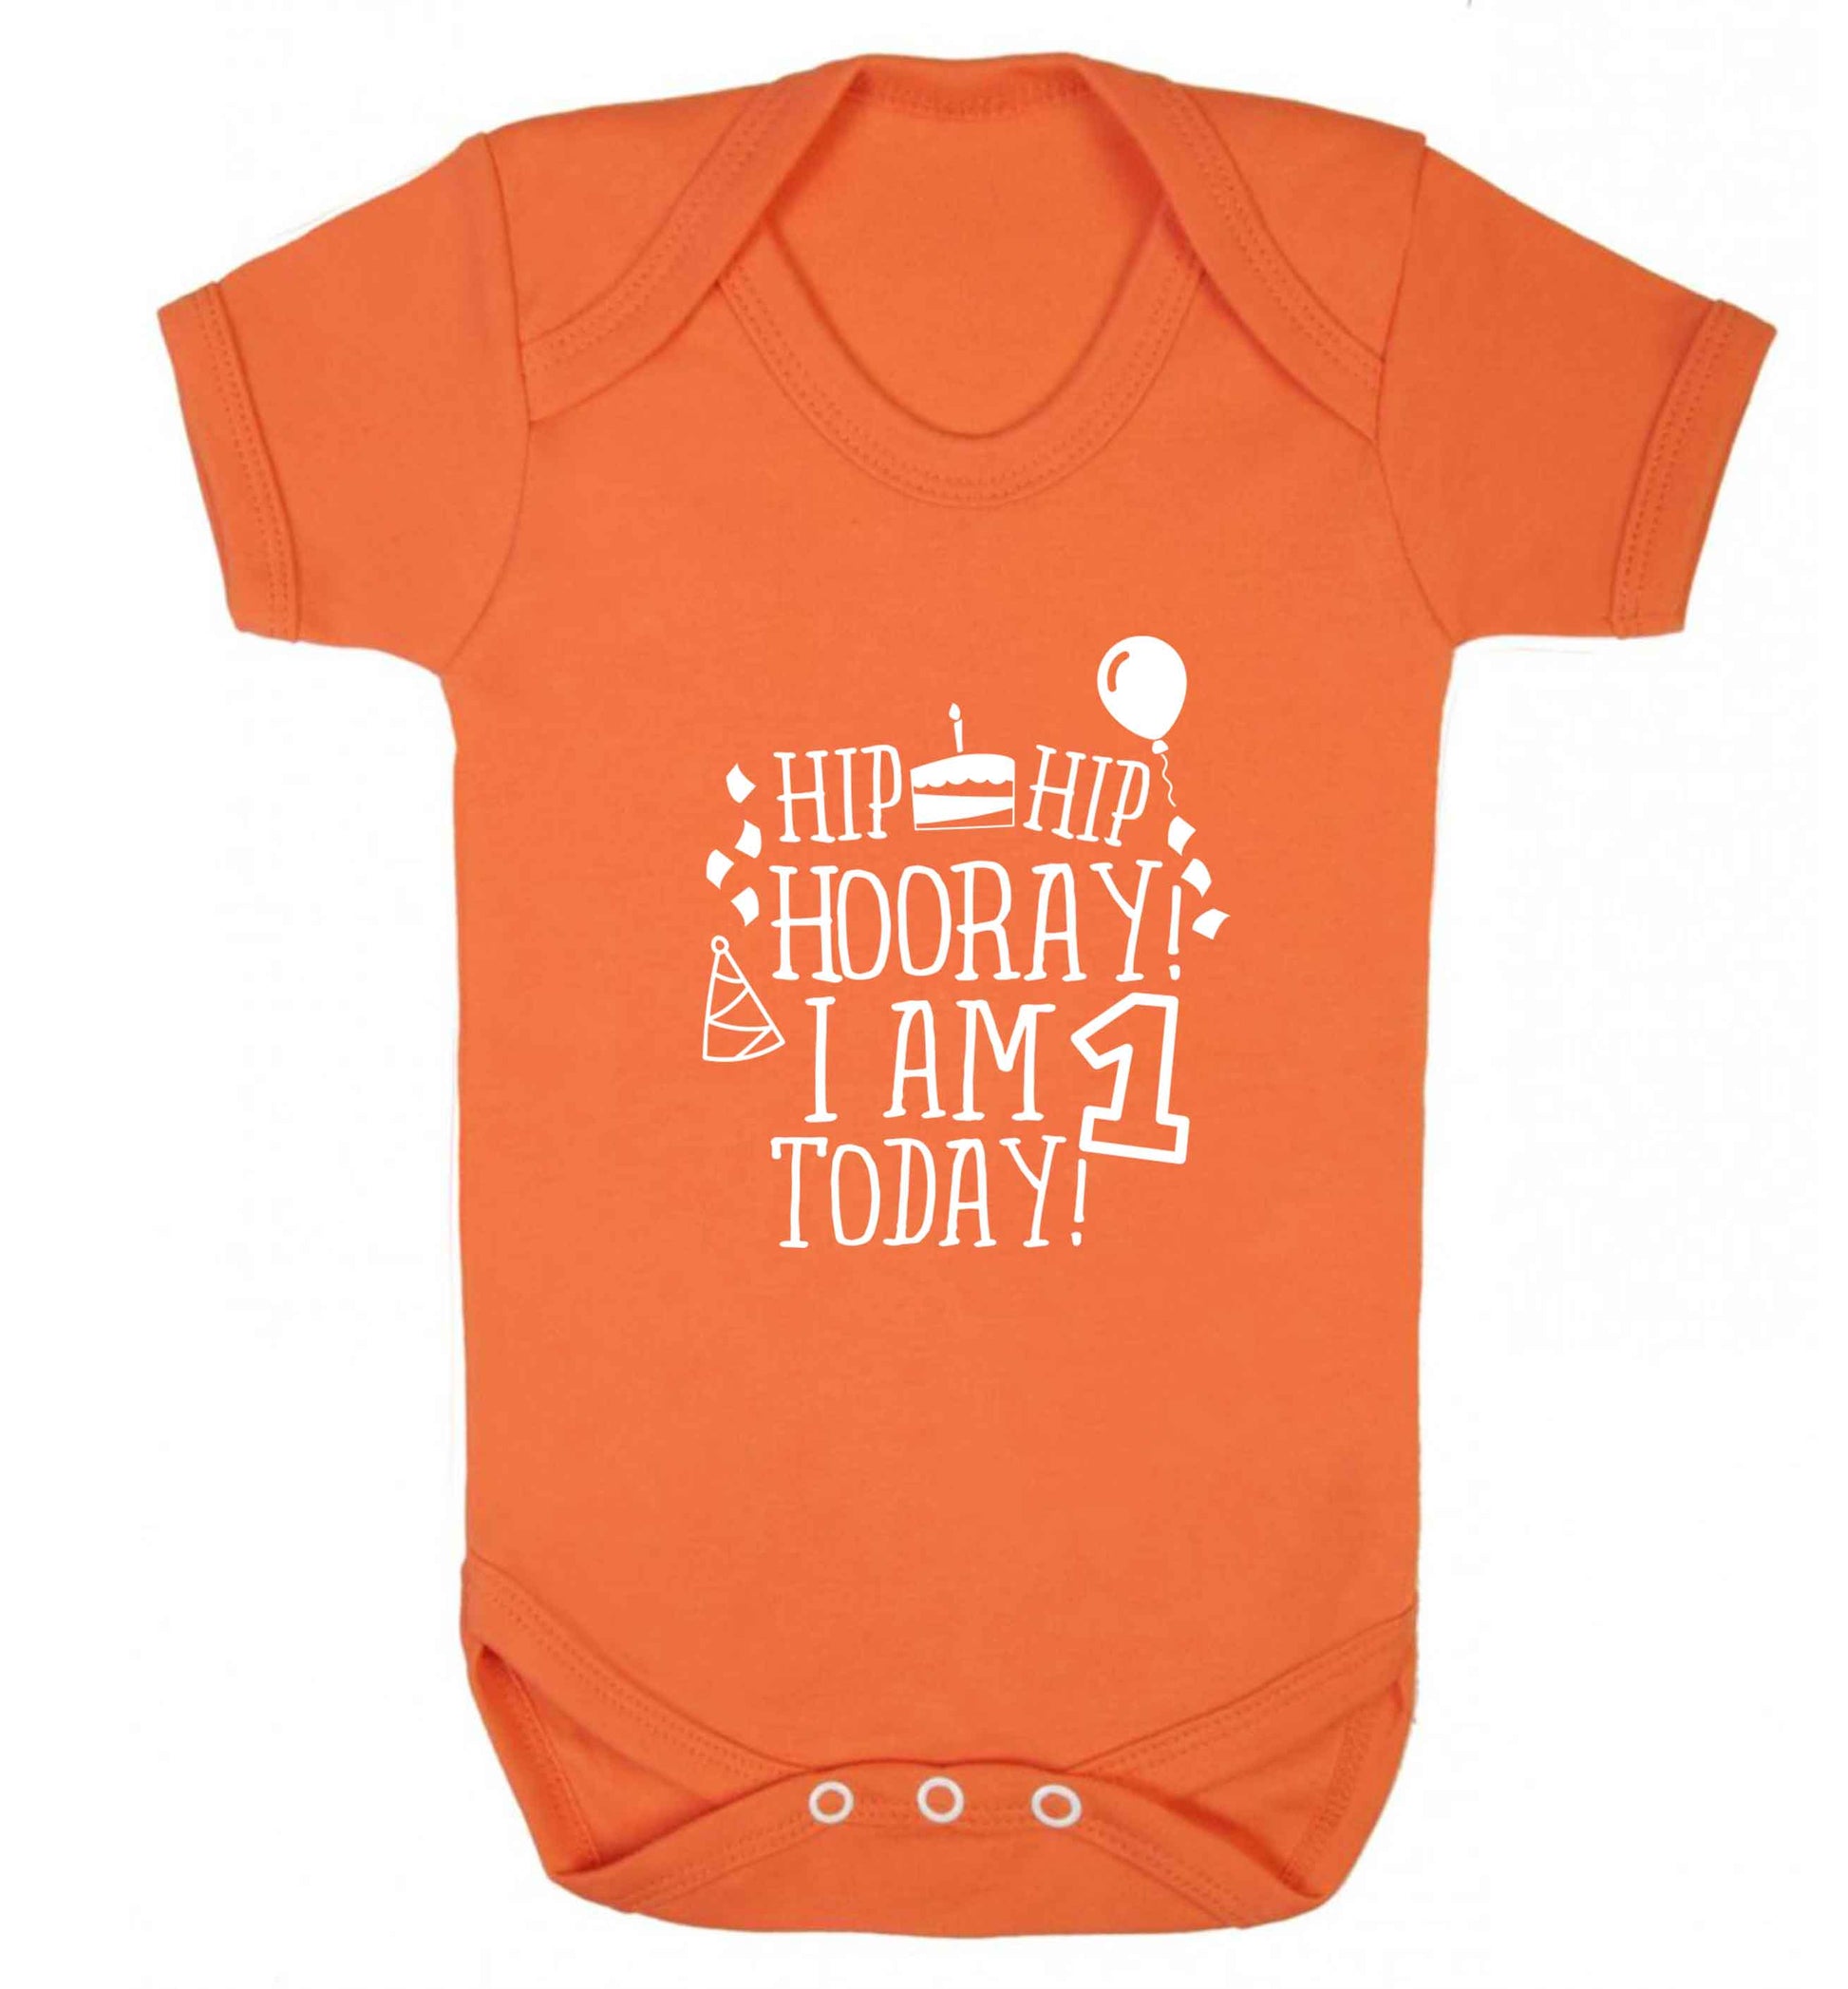 I am One Today baby vest orange 18-24 months